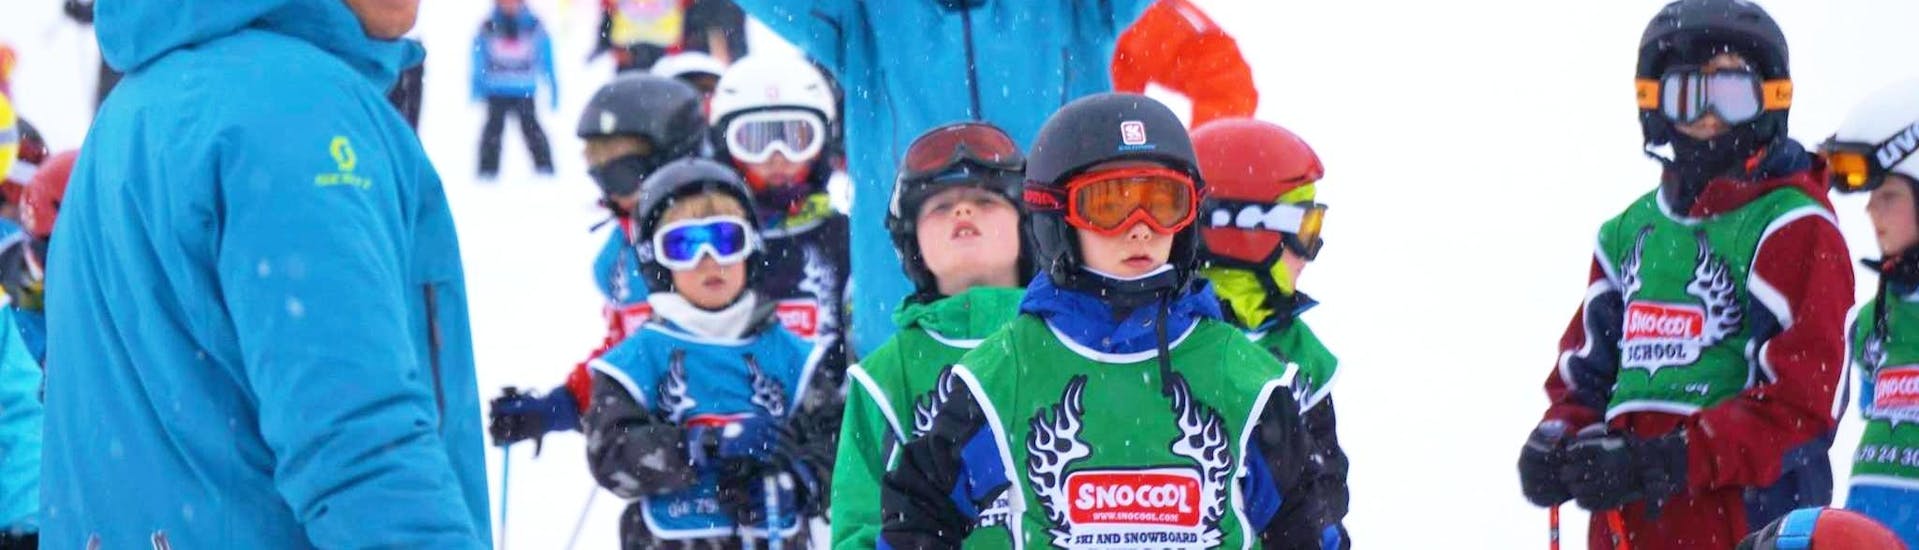 Des personnes font un Cours particulier de ski Enfants pour Tous niveaux avec Snocool à Sainte-Foy-Tarentaise.